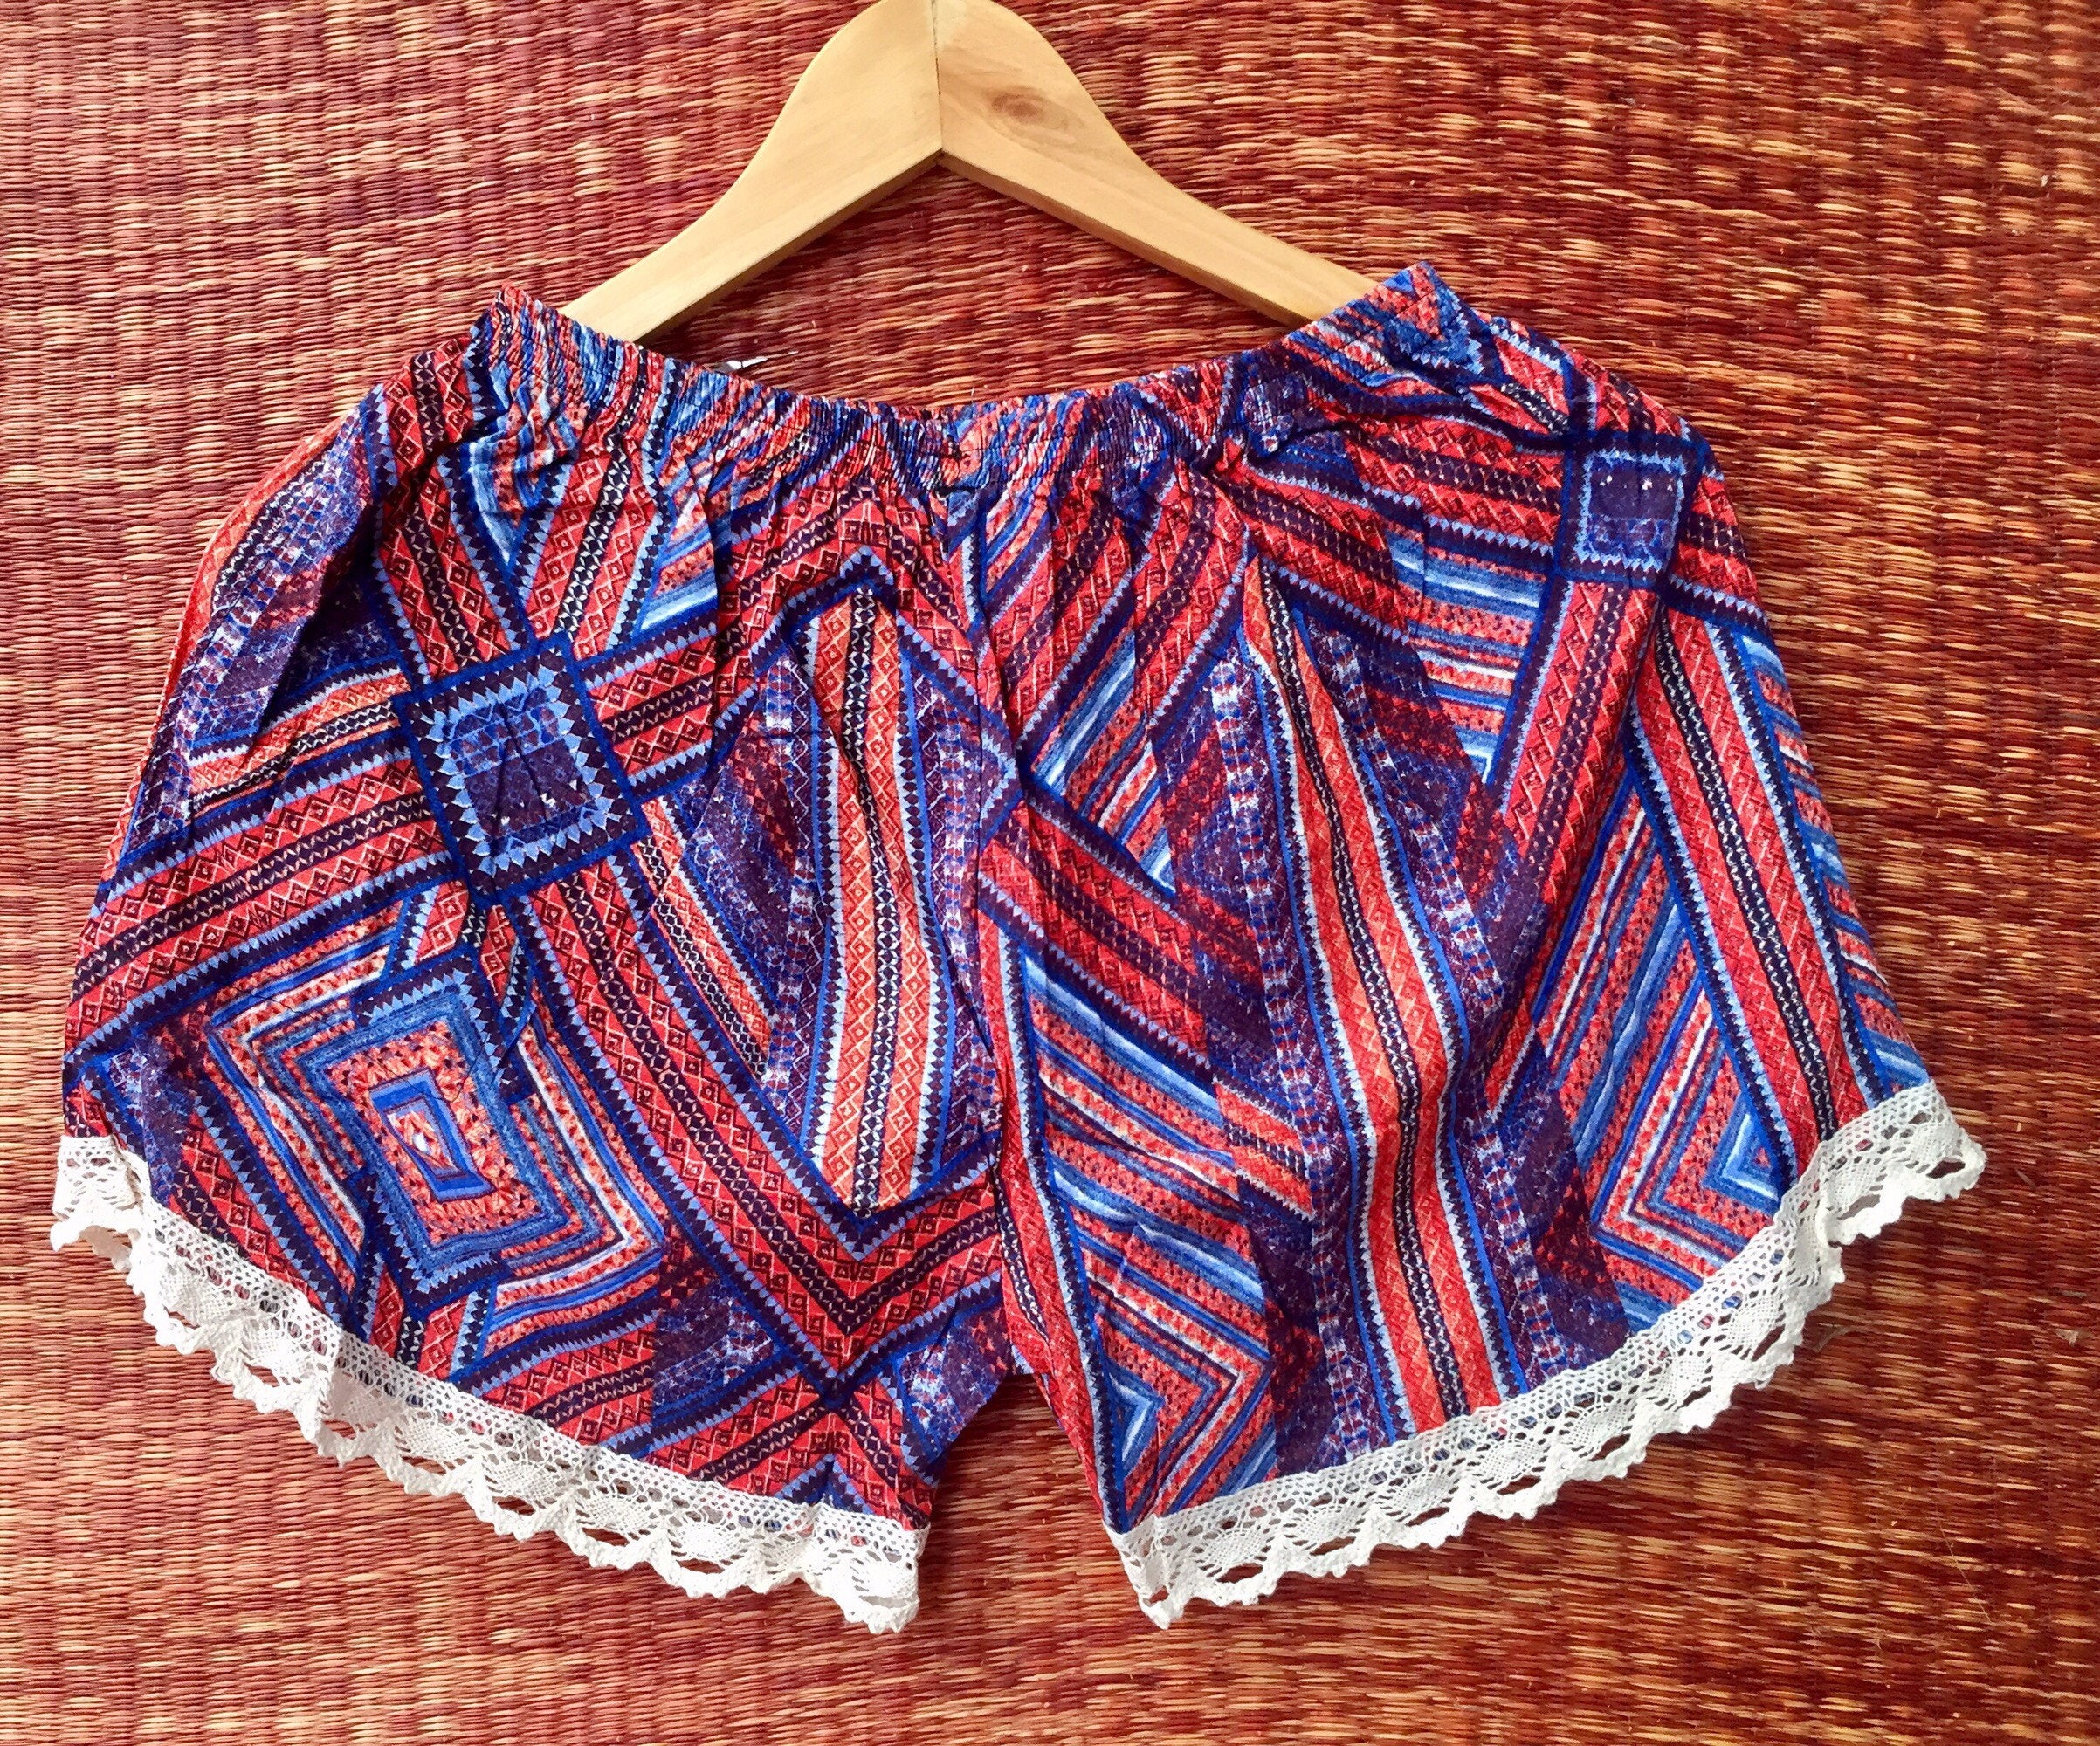 Lace Boho Shorts Elephants print fabric Clothing Aztec Ethnic | Etsy